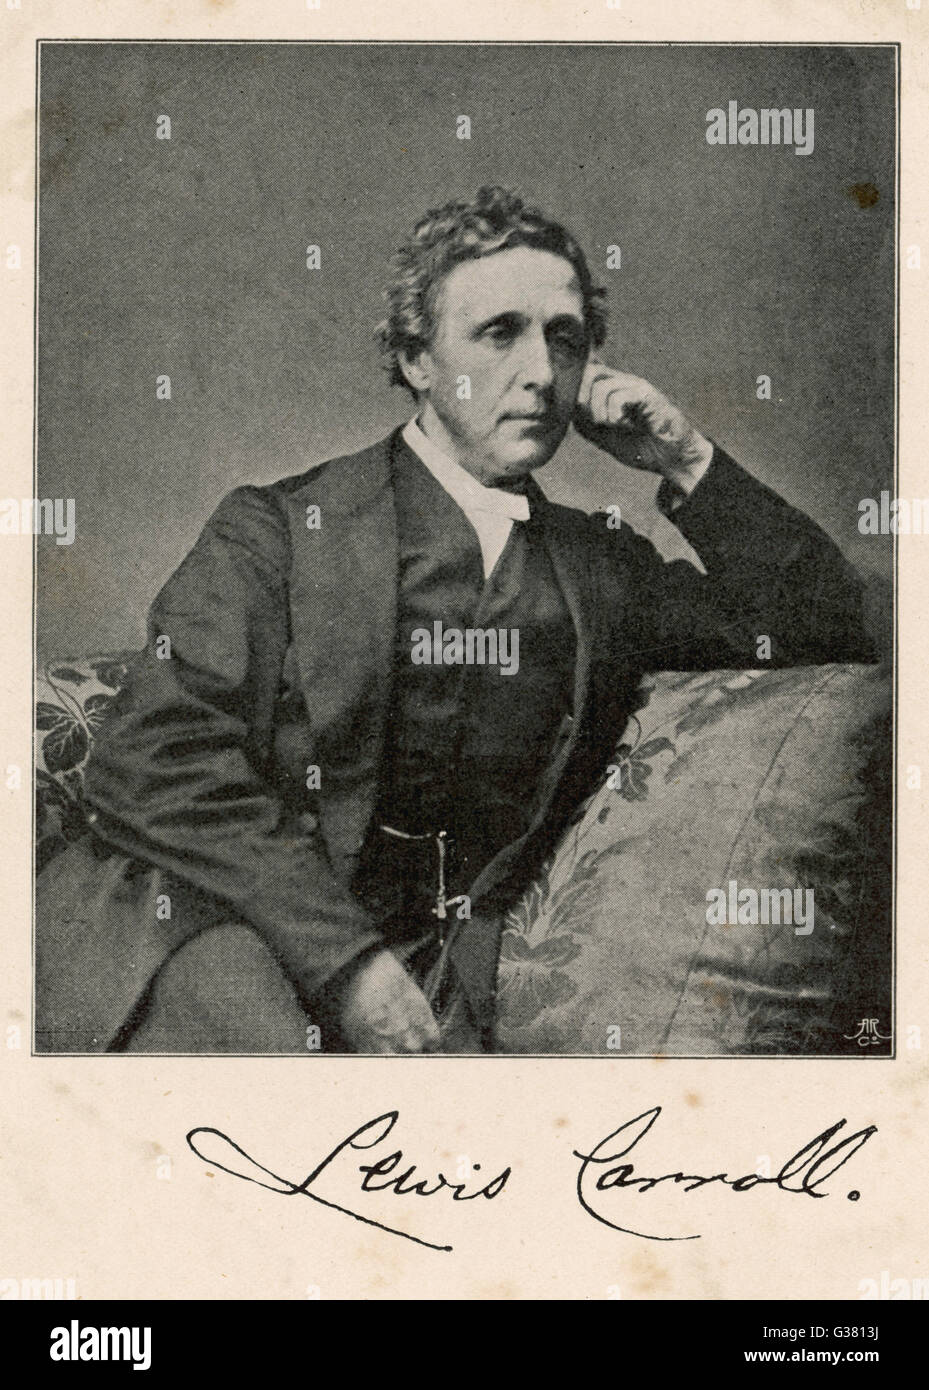 LEWIS CARROLL Nome reale : Charles Lutwidge Dodgson matematico inglese e scrittore - il creatore di "Alice" Data: 1832 - 1898 Foto Stock